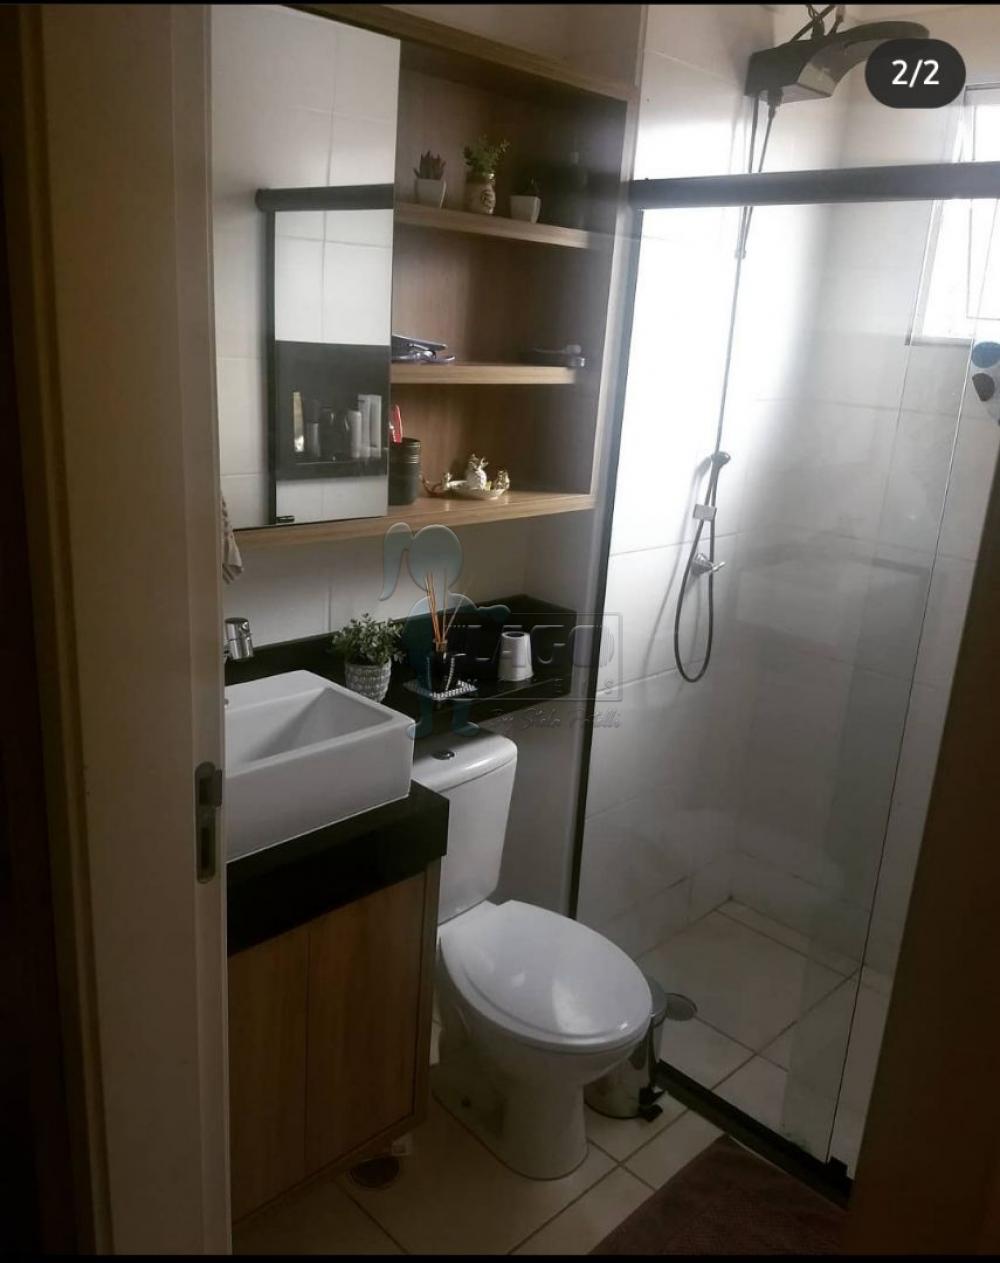 Comprar Apartamentos / Padrão em Ribeirão Preto R$ 170.000,00 - Foto 5